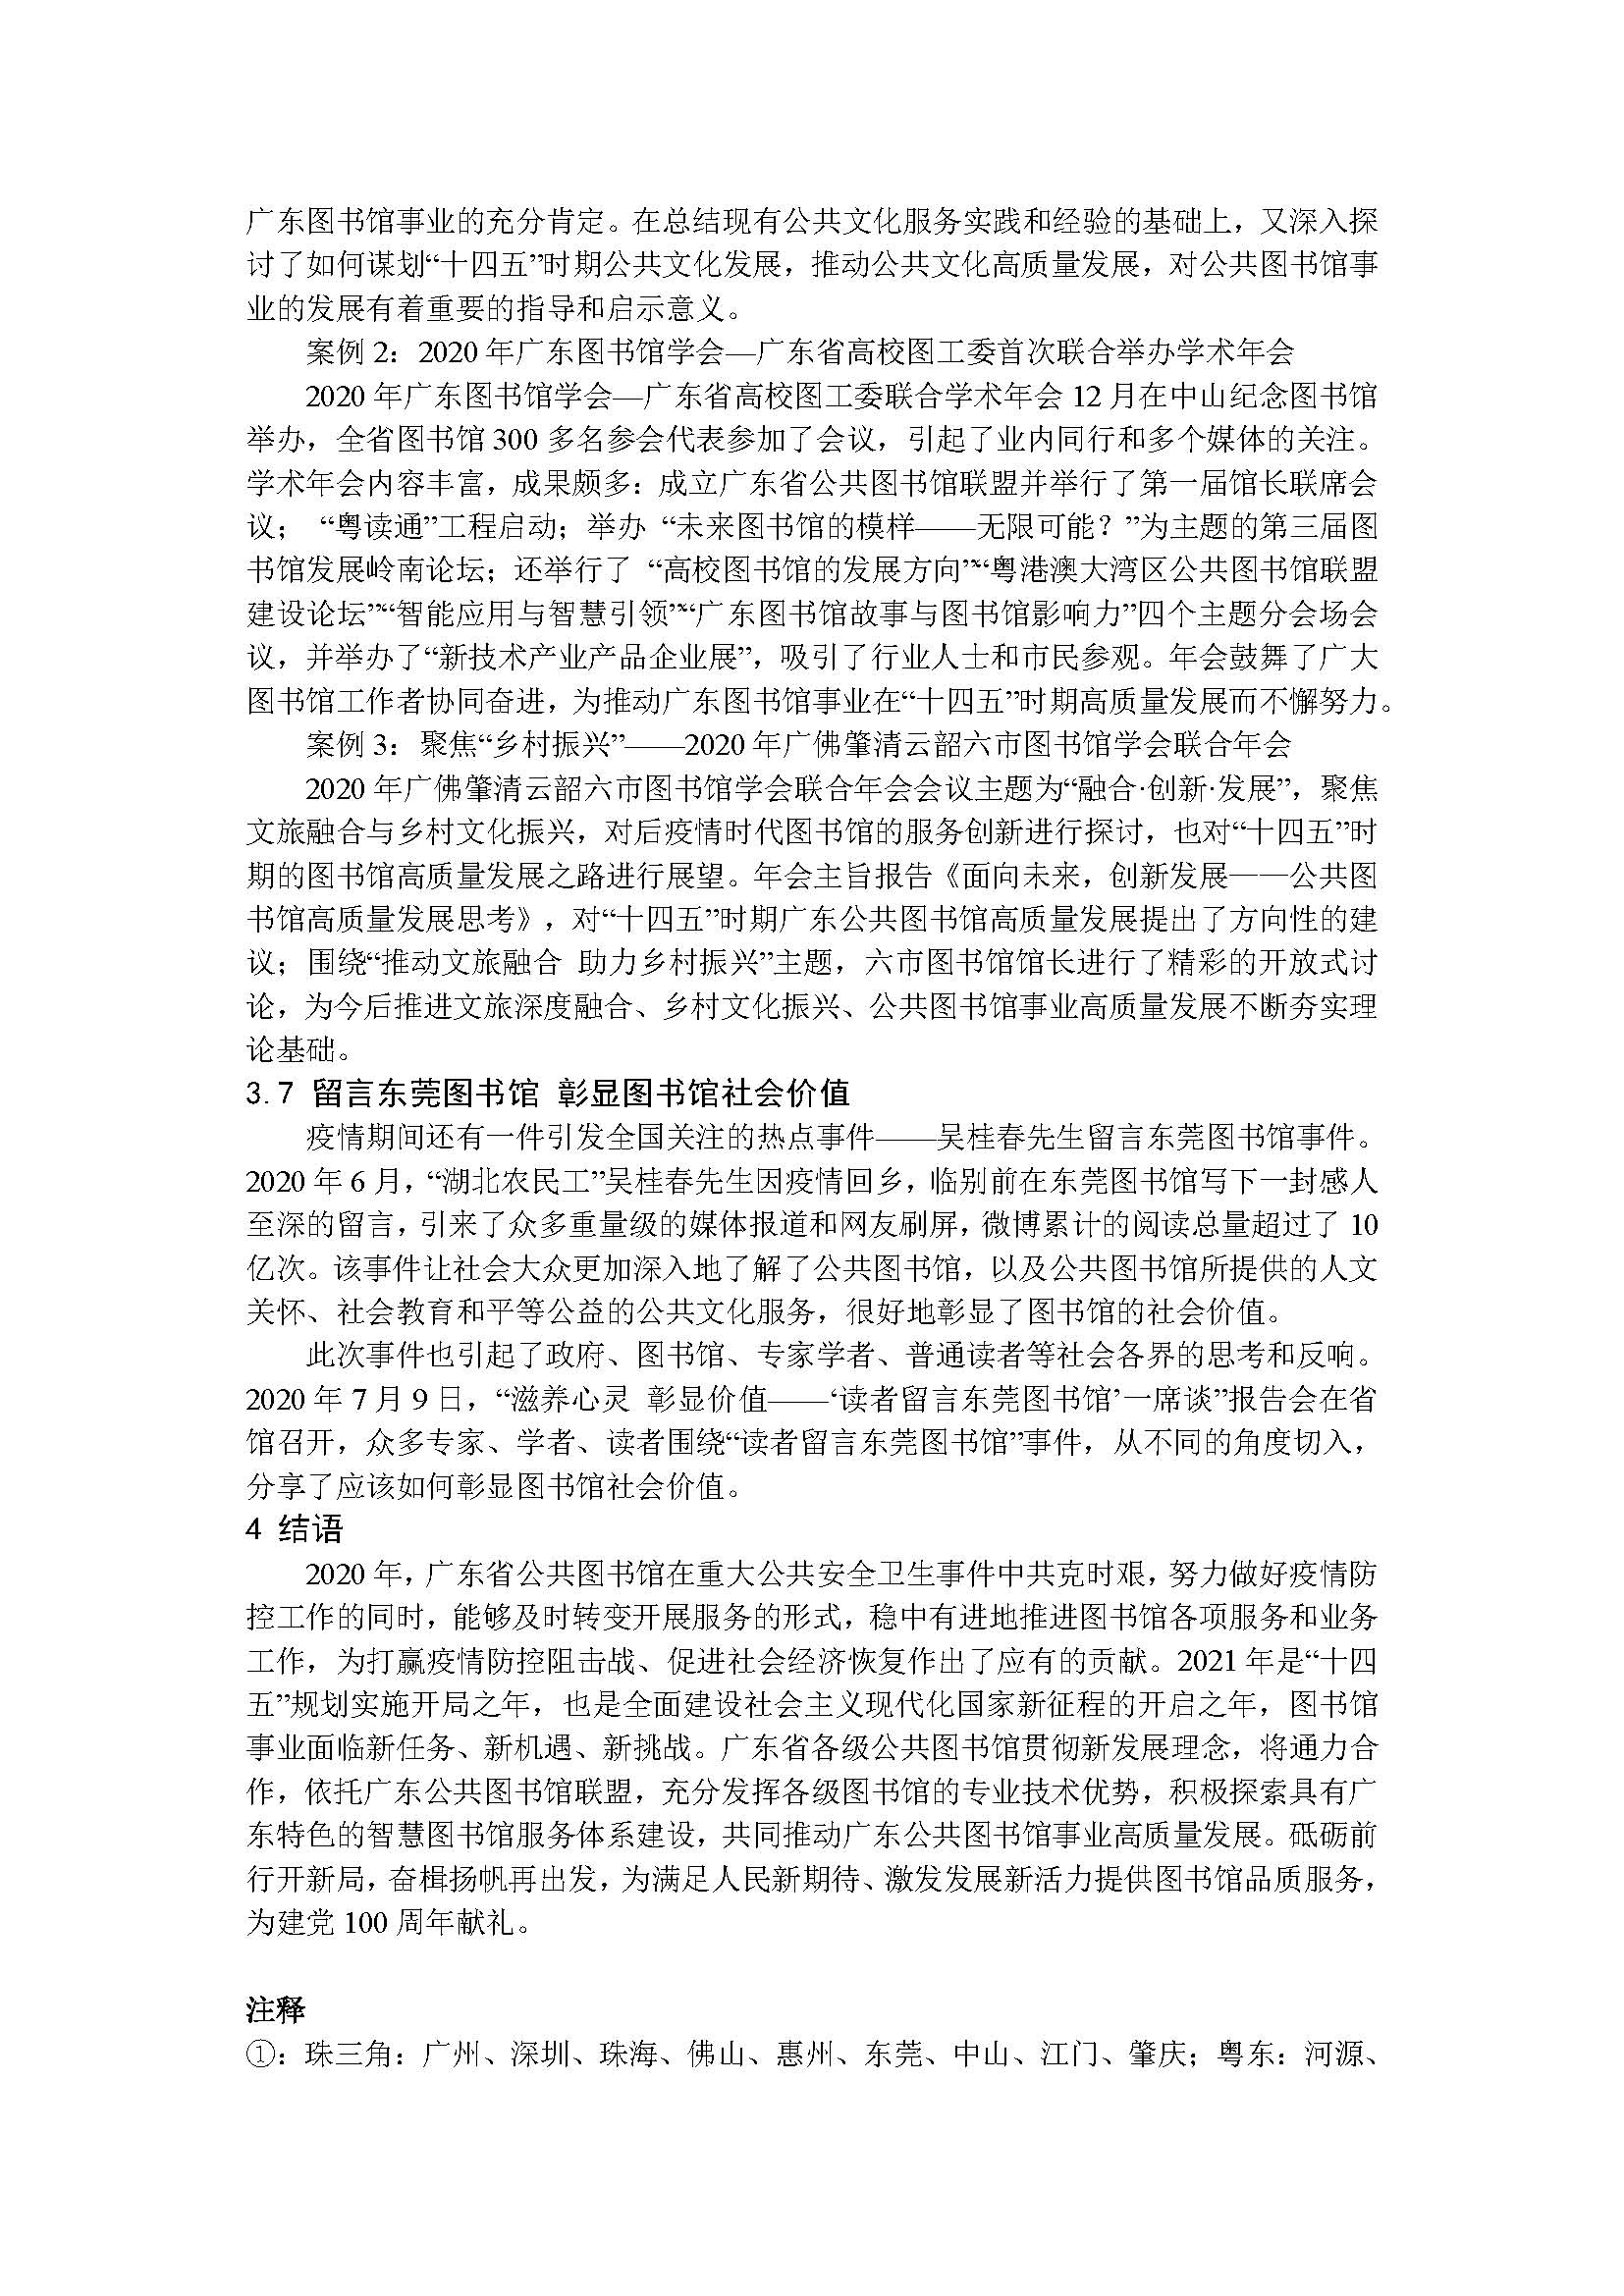 2020年广东省公共图书馆事业发展年度报告_页面_11.jpg